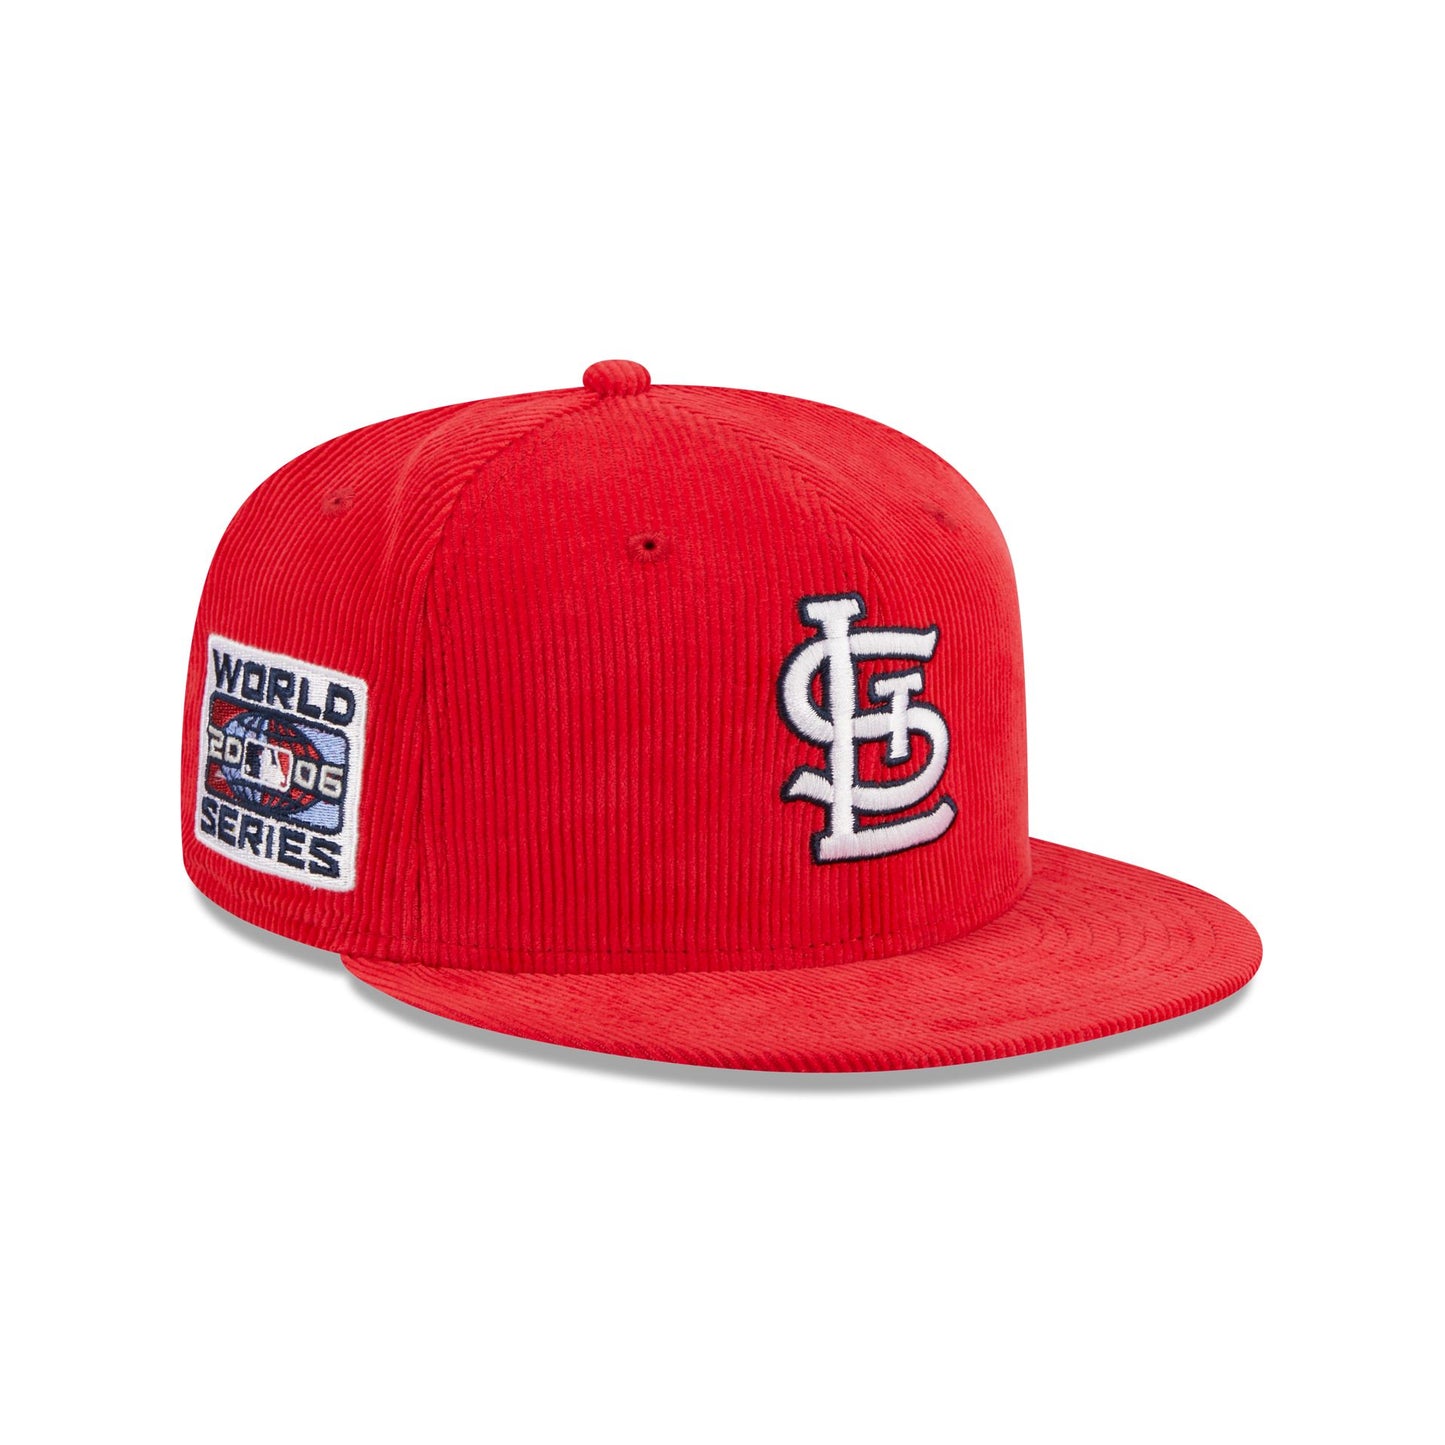 VINTAGE St Louis Cardinals Hat Cap Snapback Twins Enterprises Men White  Adjust